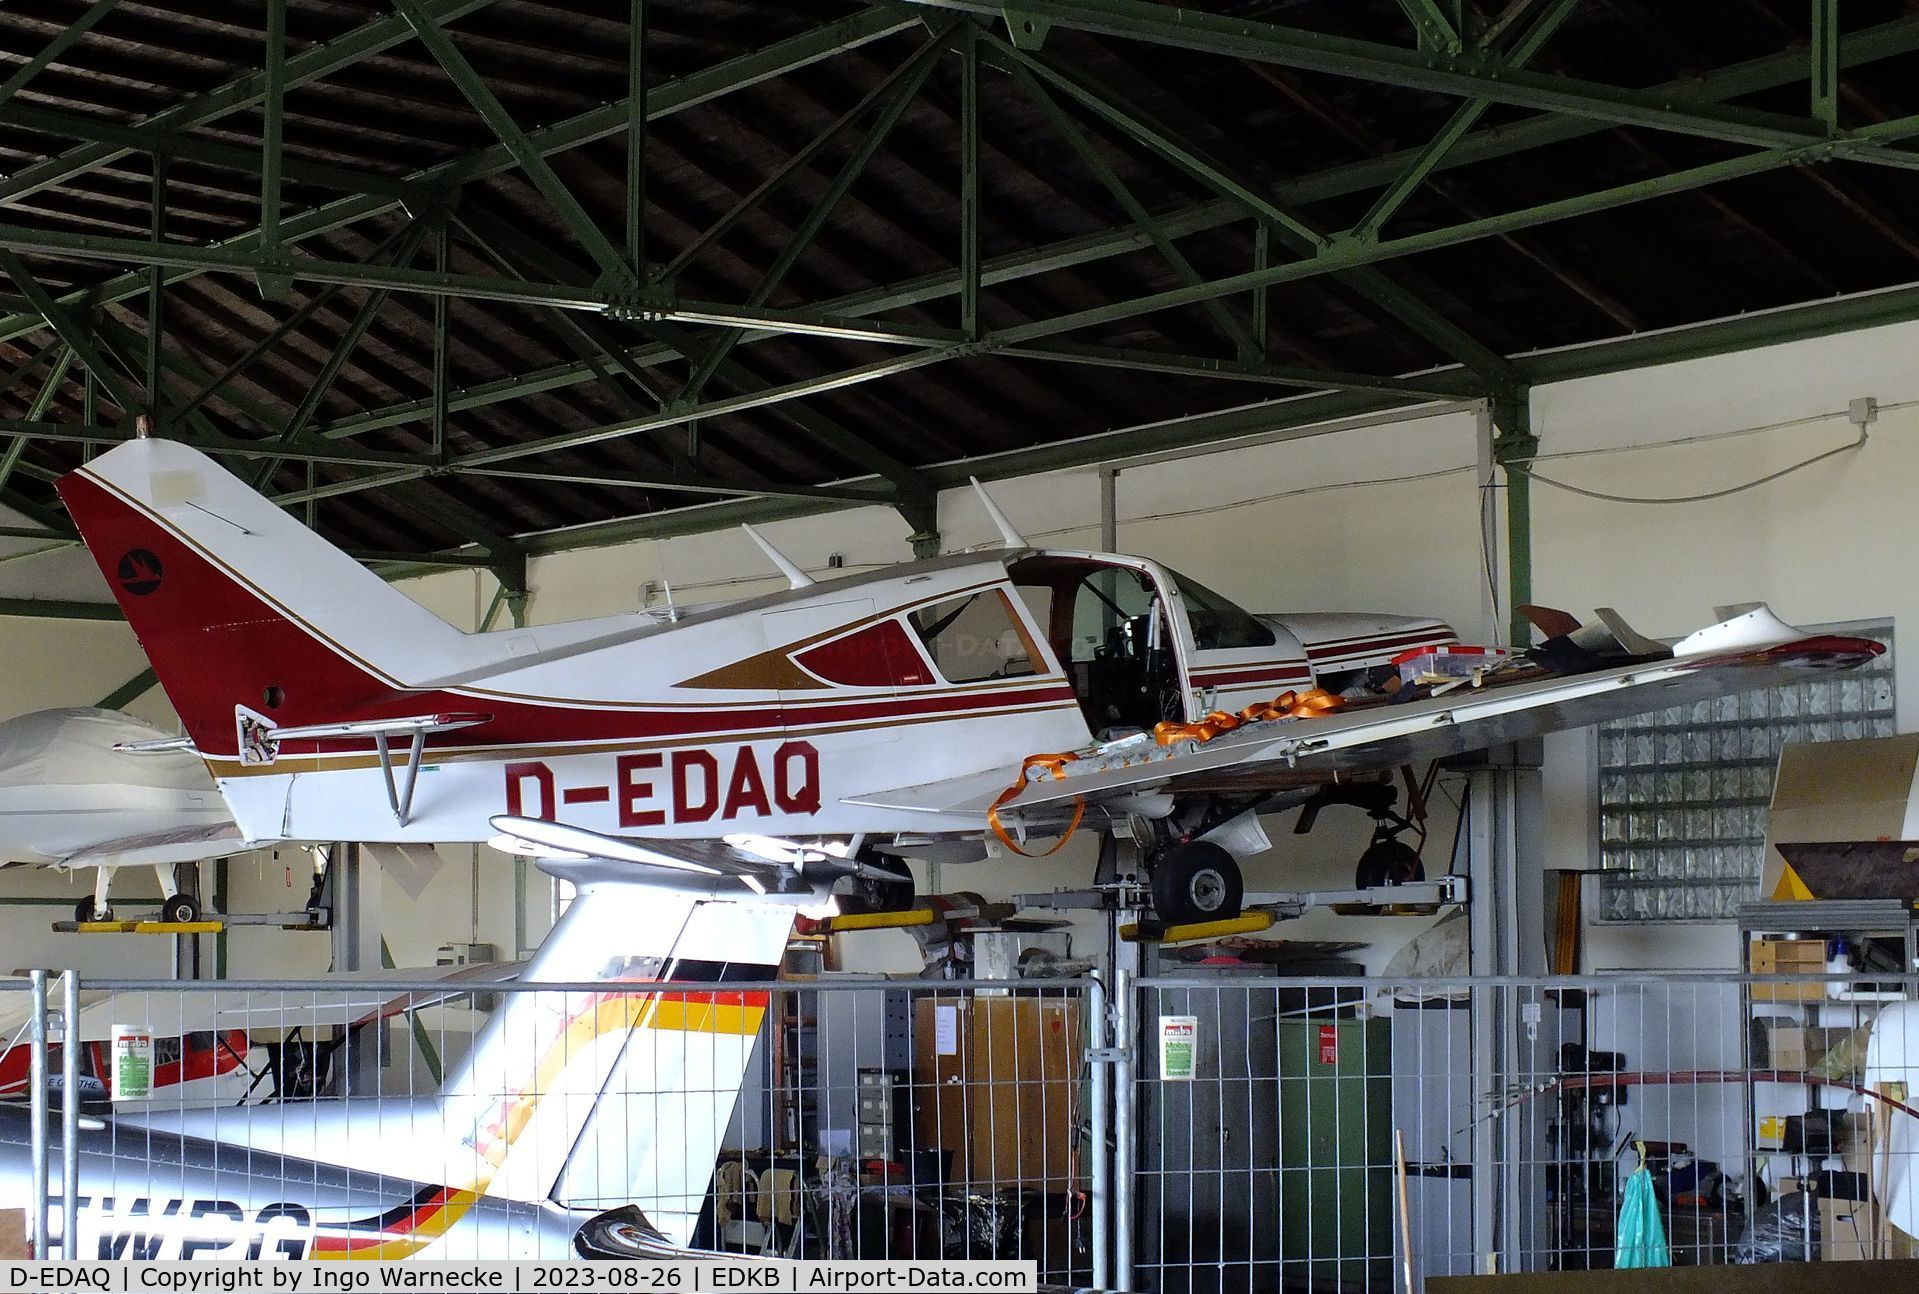 D-EDAQ, Bellanca 17-31ATC 300A Super Viking C/N 74-31100, Bellanca 17-31ATC Super Viking 300A at Bonn-Hangelar airfield during the Grumman Fly-in 2023